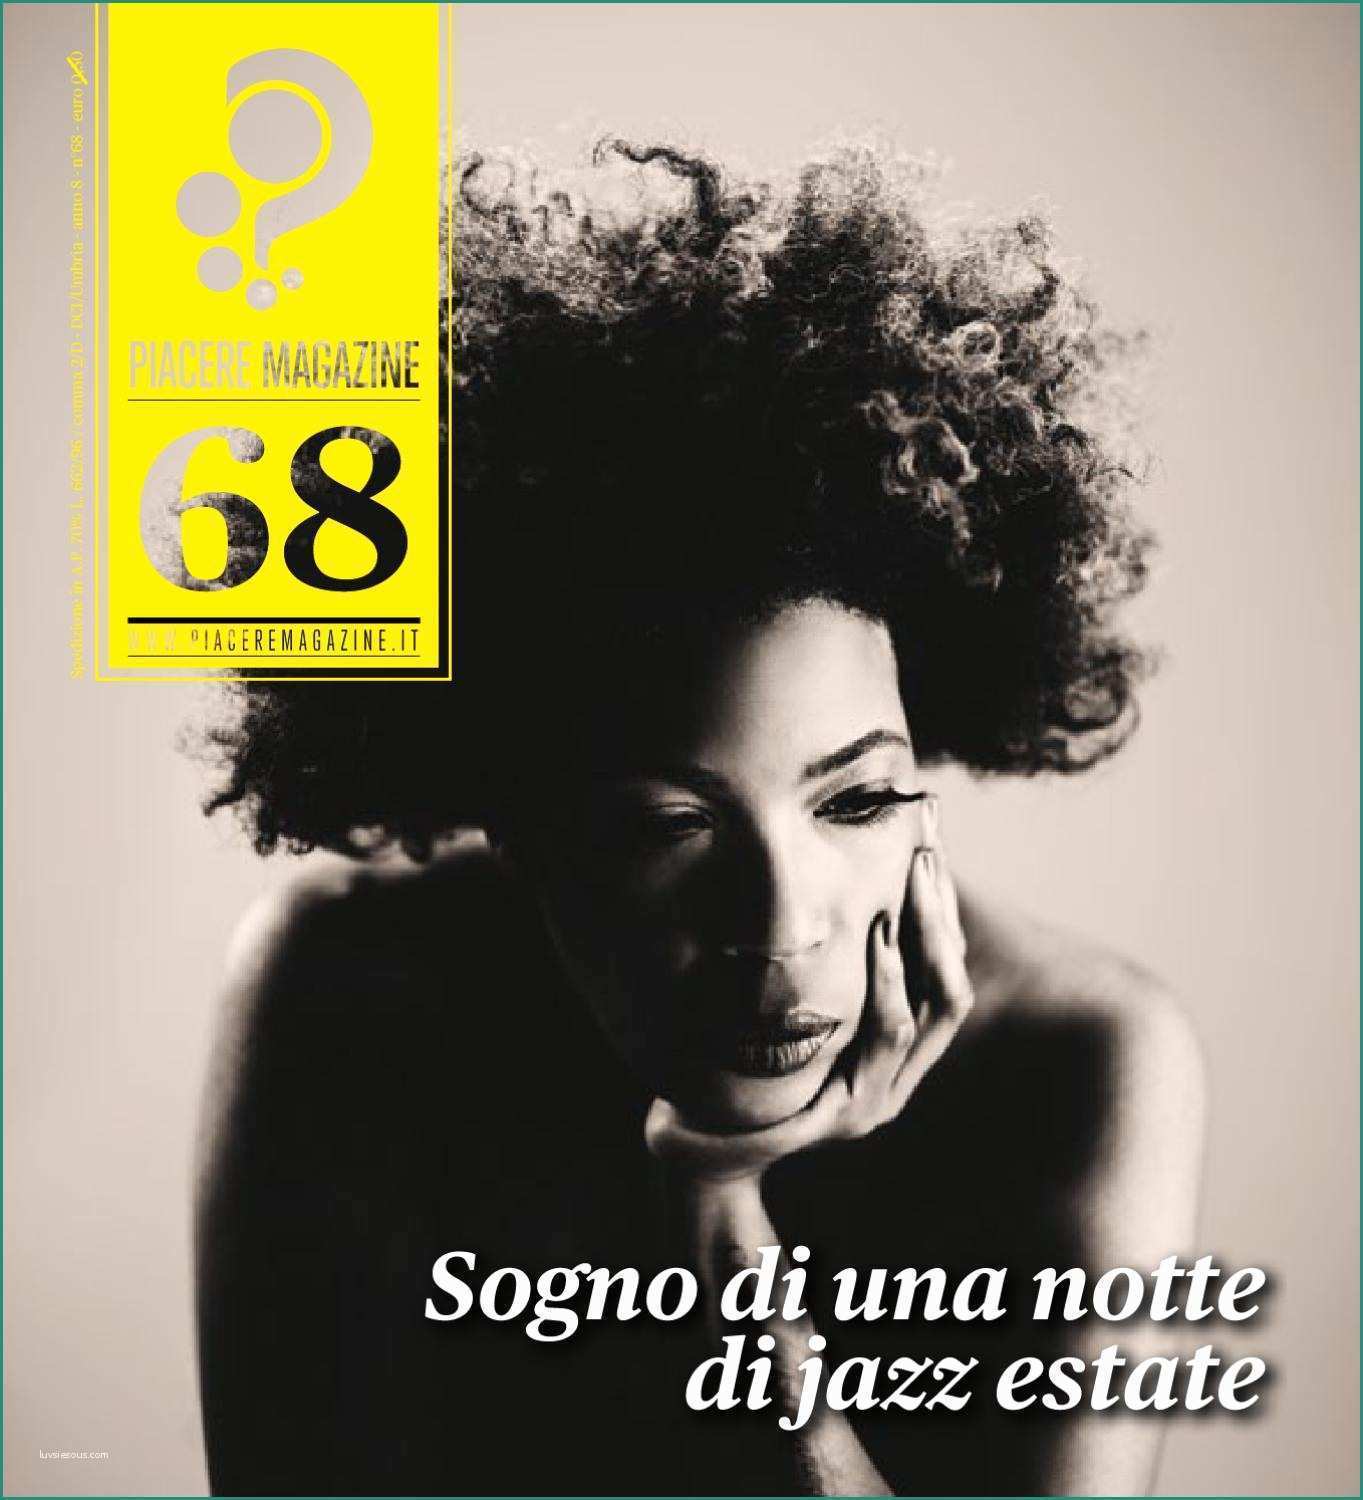 Poltrona Frau Spaccio E Piacere Magazine N 68 Luglio Agosto 2012 by Pm Piacere Magazine